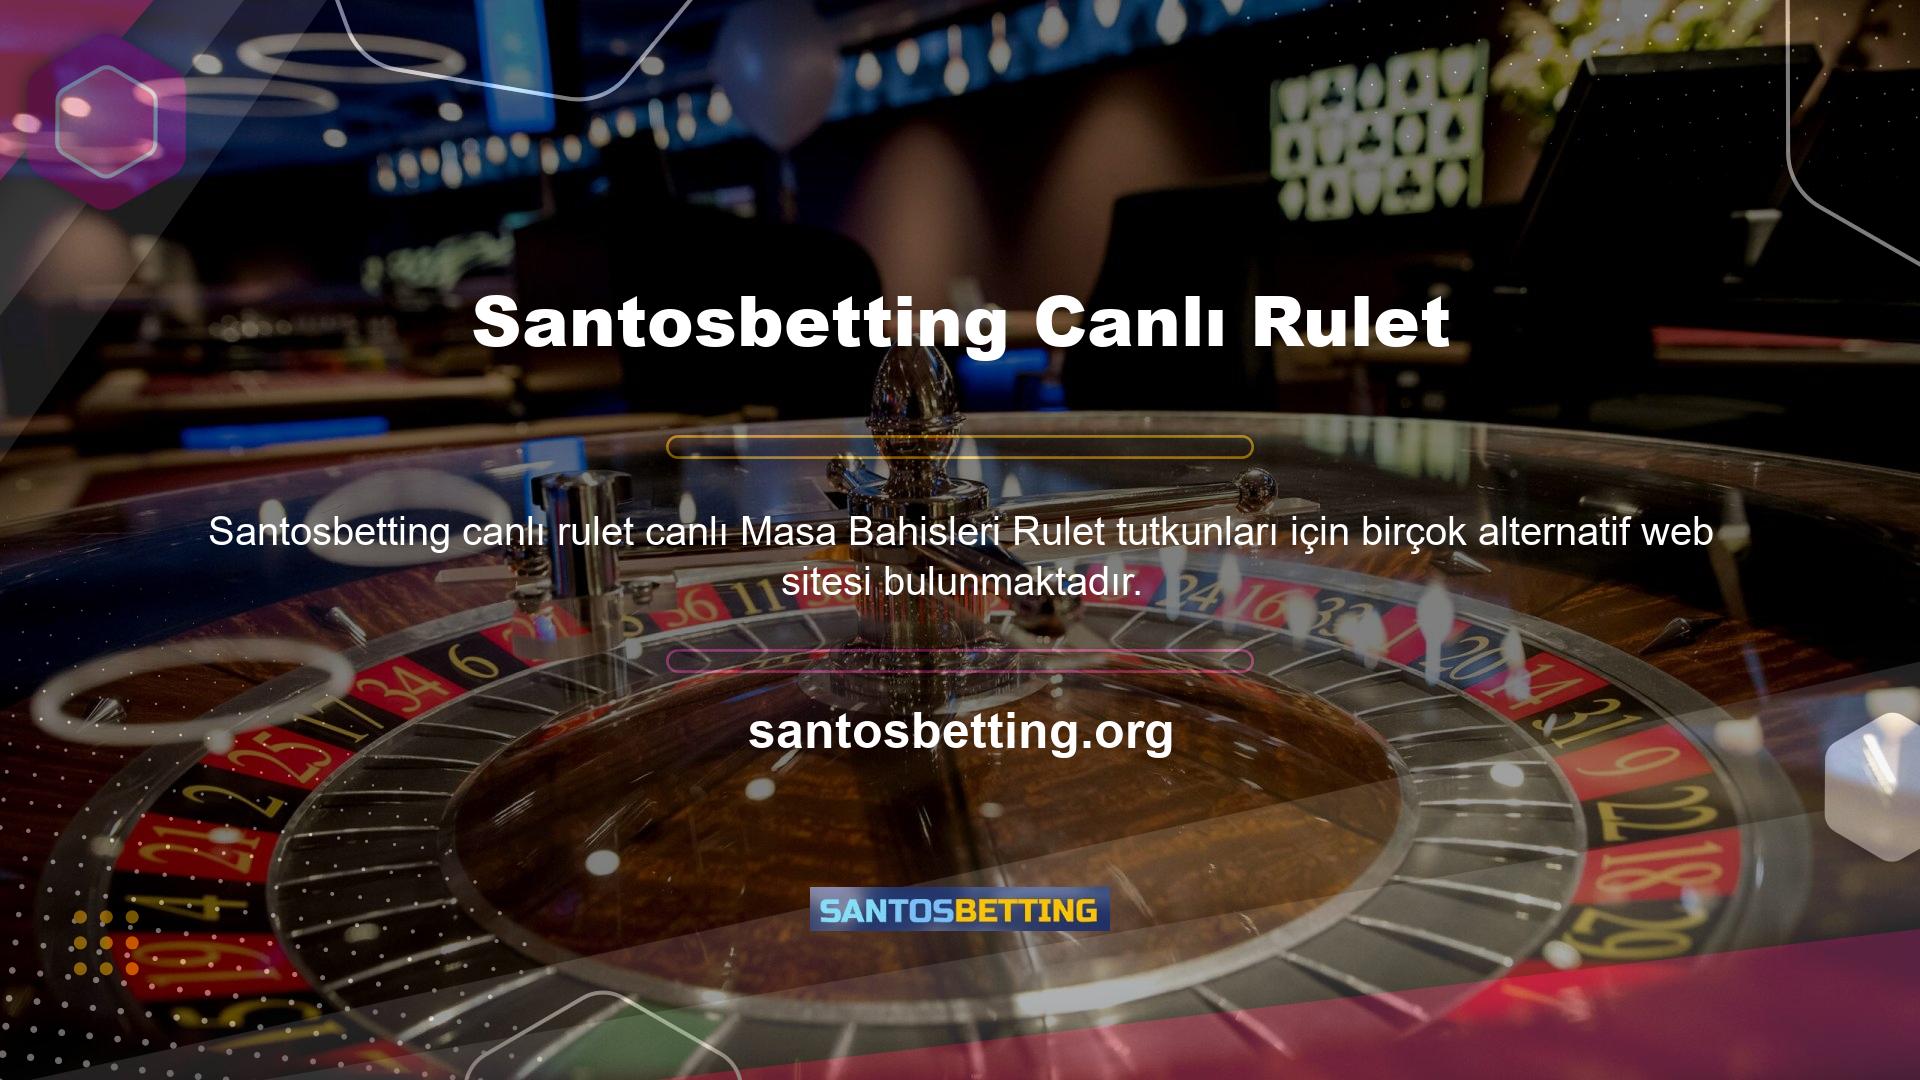 Santosbetting Canlı Rulet Masasında Bahis Santosbetting Slots Casino'da rulet bahisleri söz konusu olduğunda, Lightning Roulette gibi eski moda bahis türleri de bulunmaktadır